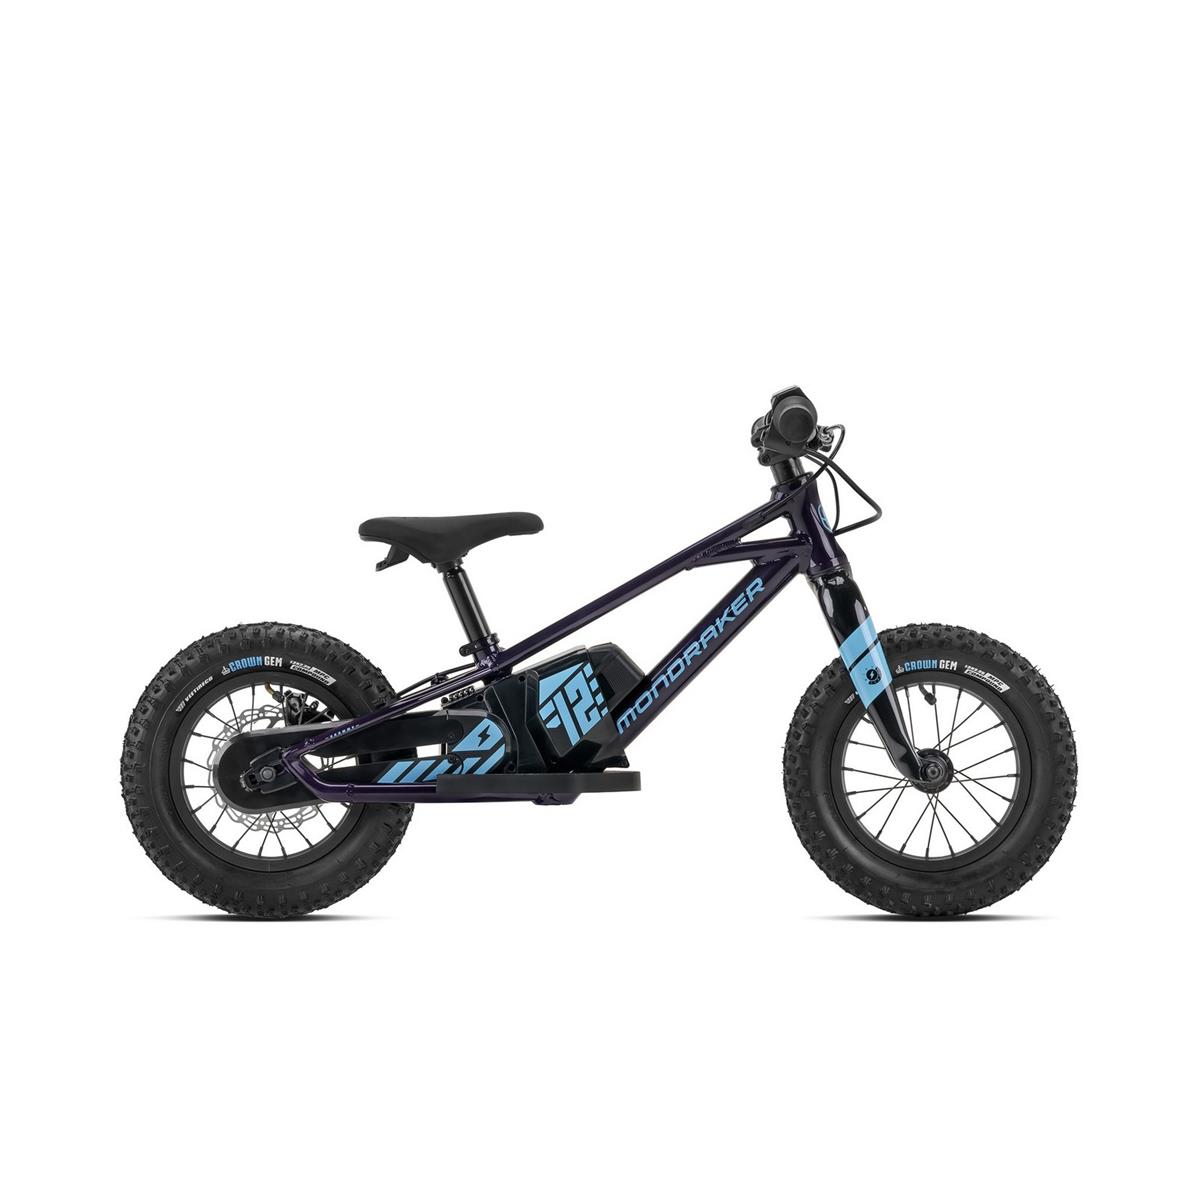 E-Bike Pedagógica Grommy 12'' 1v 80w MDK Morado/Azul